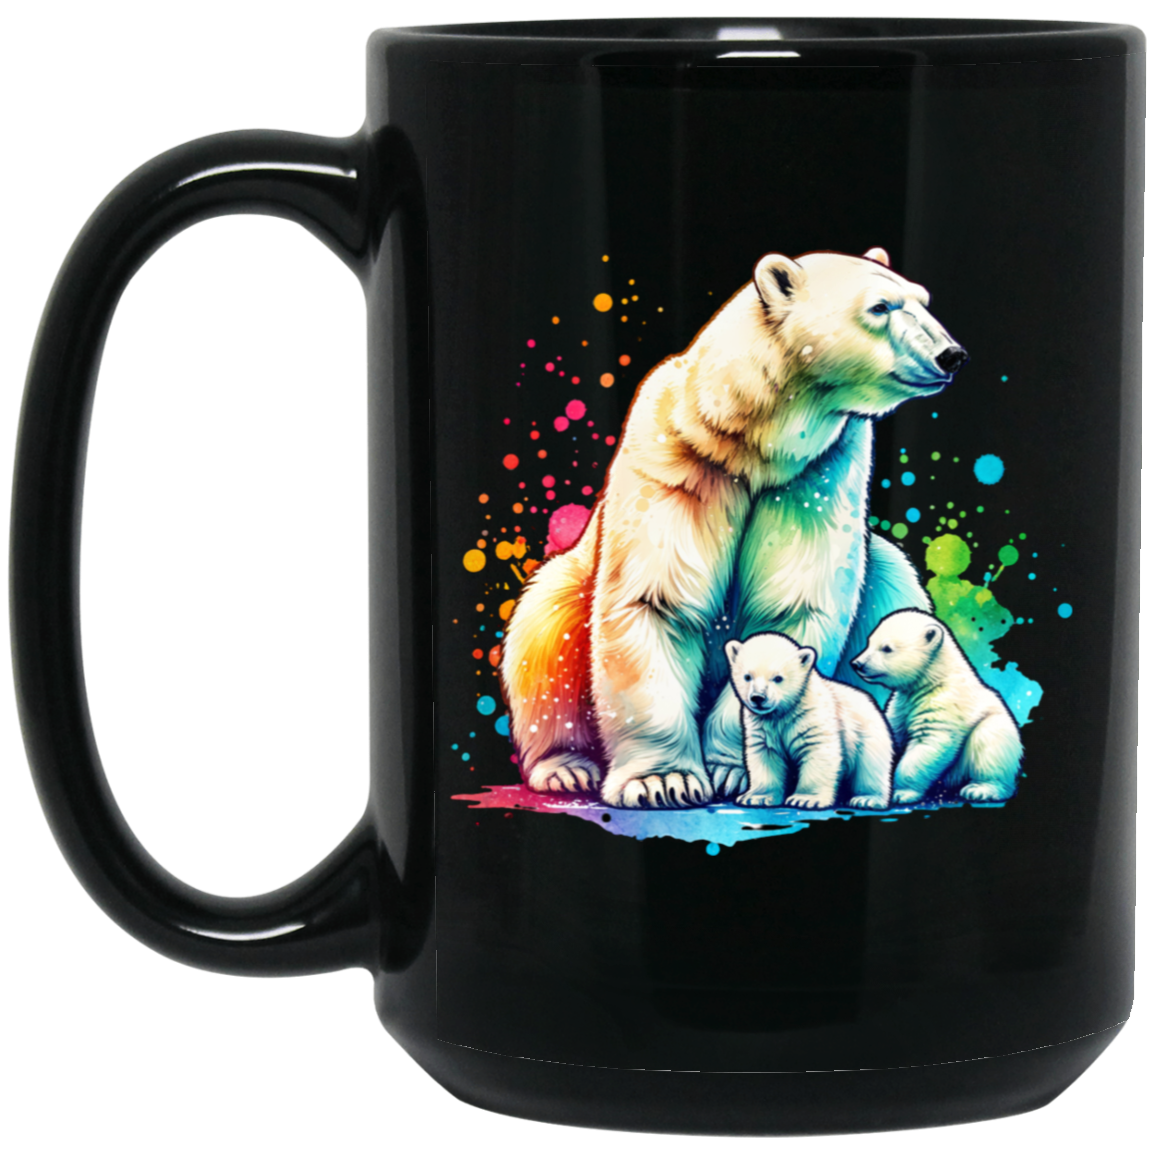 Polar Bear Mom with Cubs Mugs